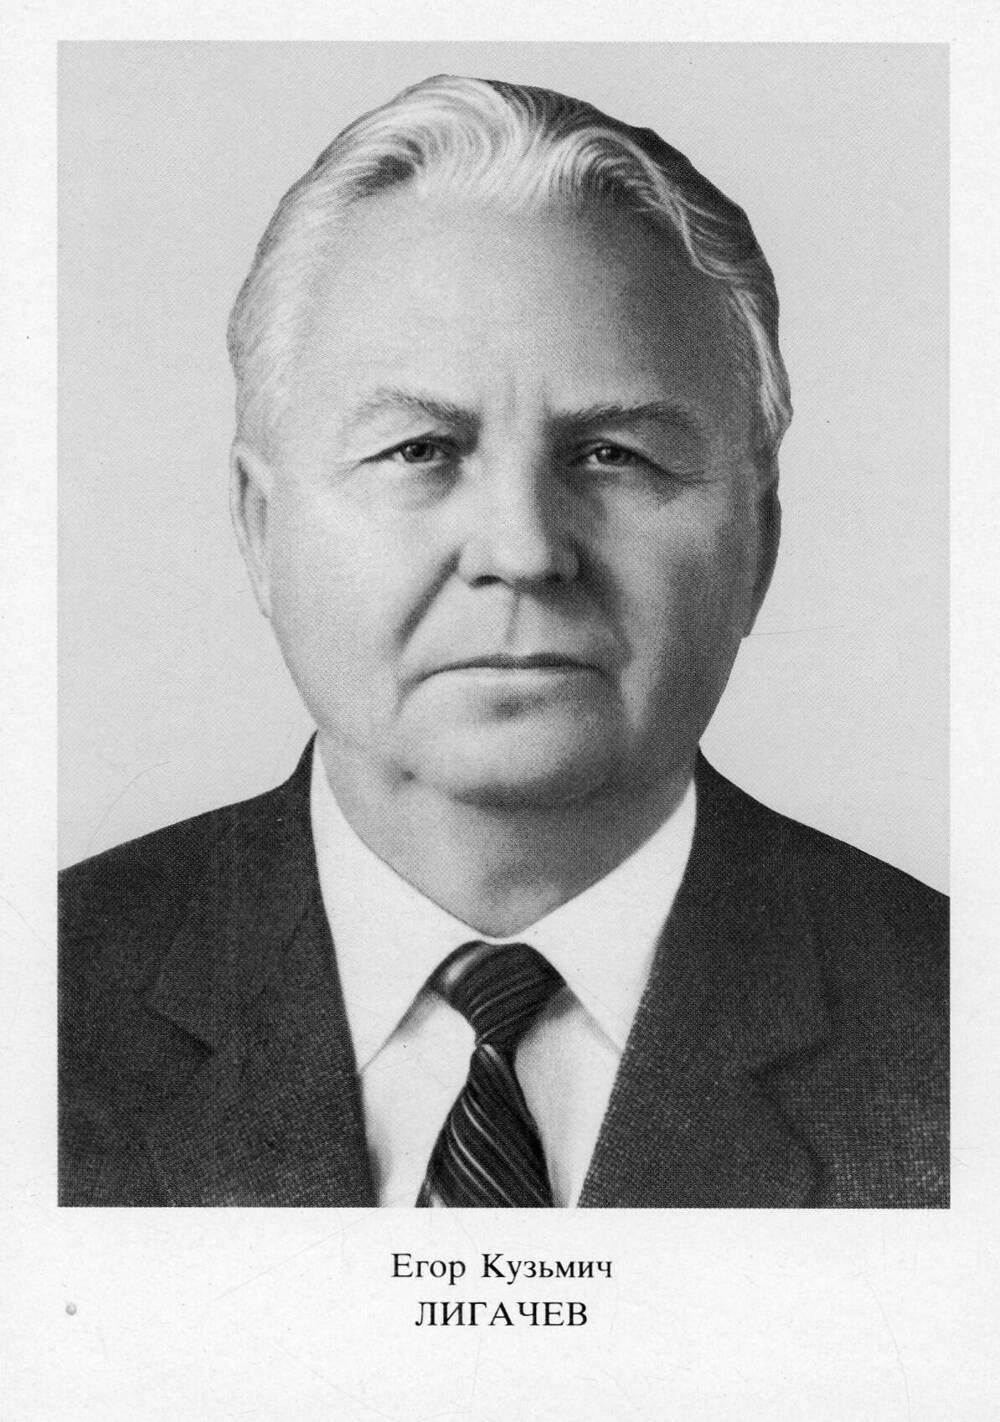 Фотопортрет Лигачева Егора Кузьмича из набора открыток Фотопортреты членов и кандидатов в члены Политбюро ЦК КПСС.